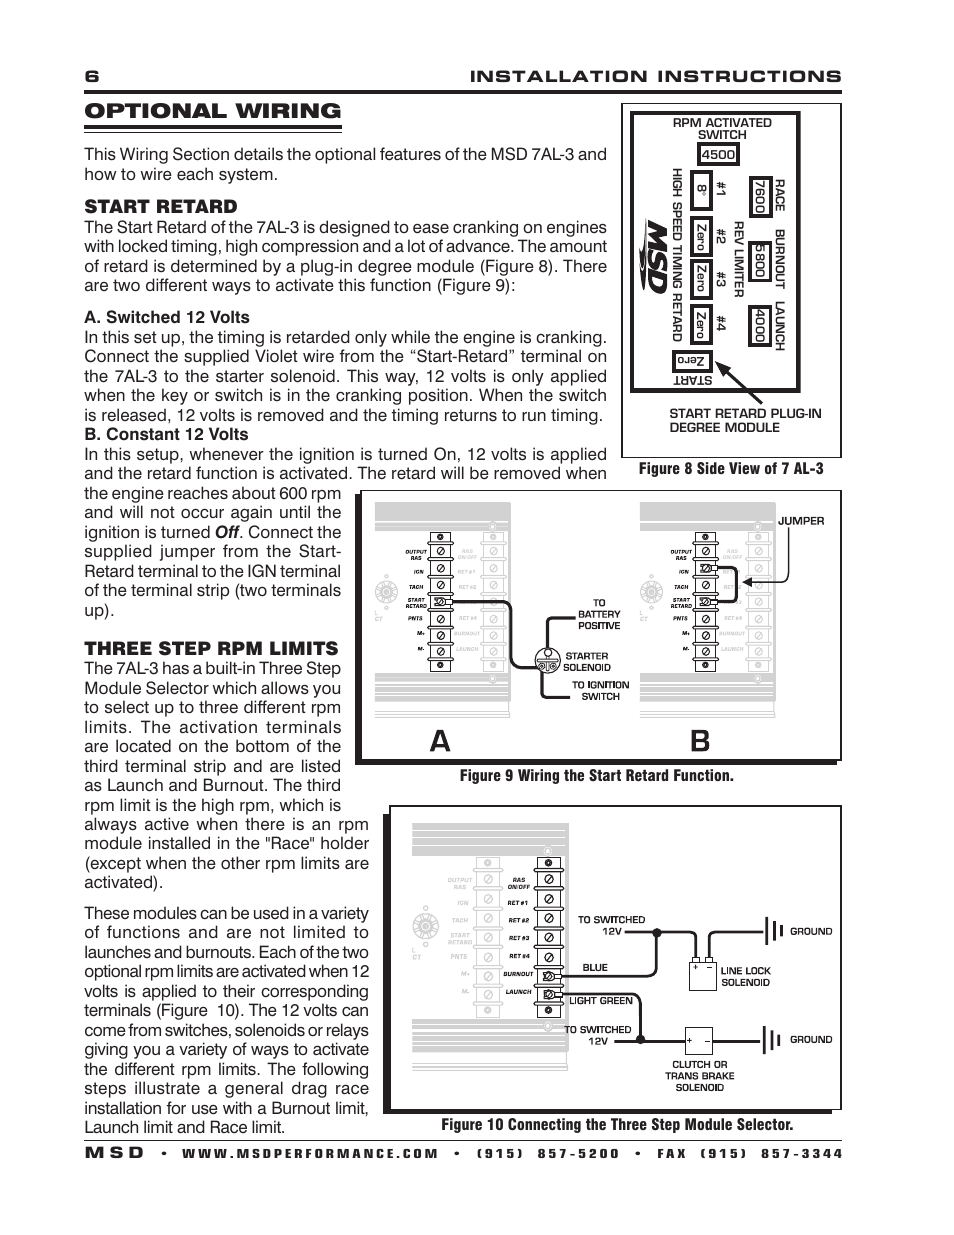 Optional wiring, Start retard, Three step rpm limits | MSD 7330 7AL-3